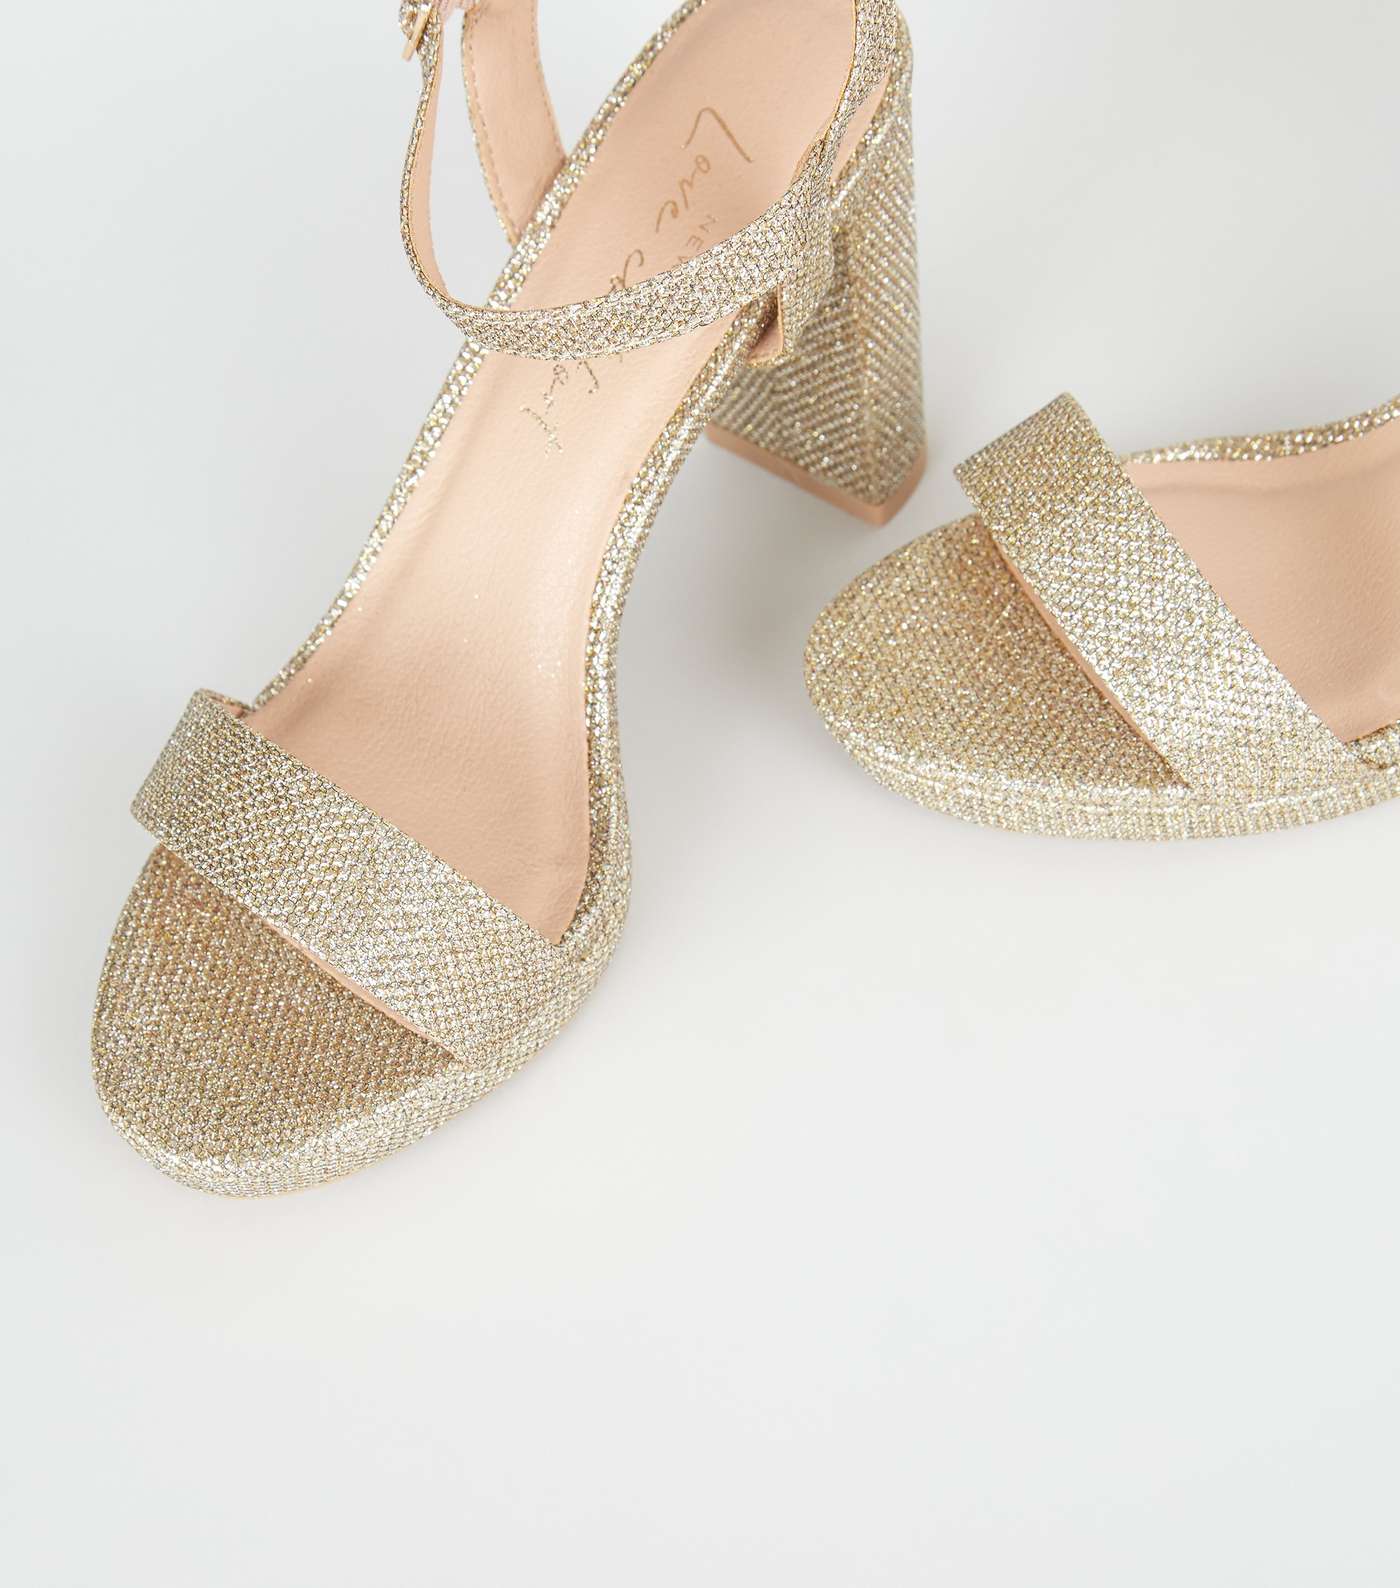 Gold Glitter 2 Part Platform Heeled Sandals Image 2